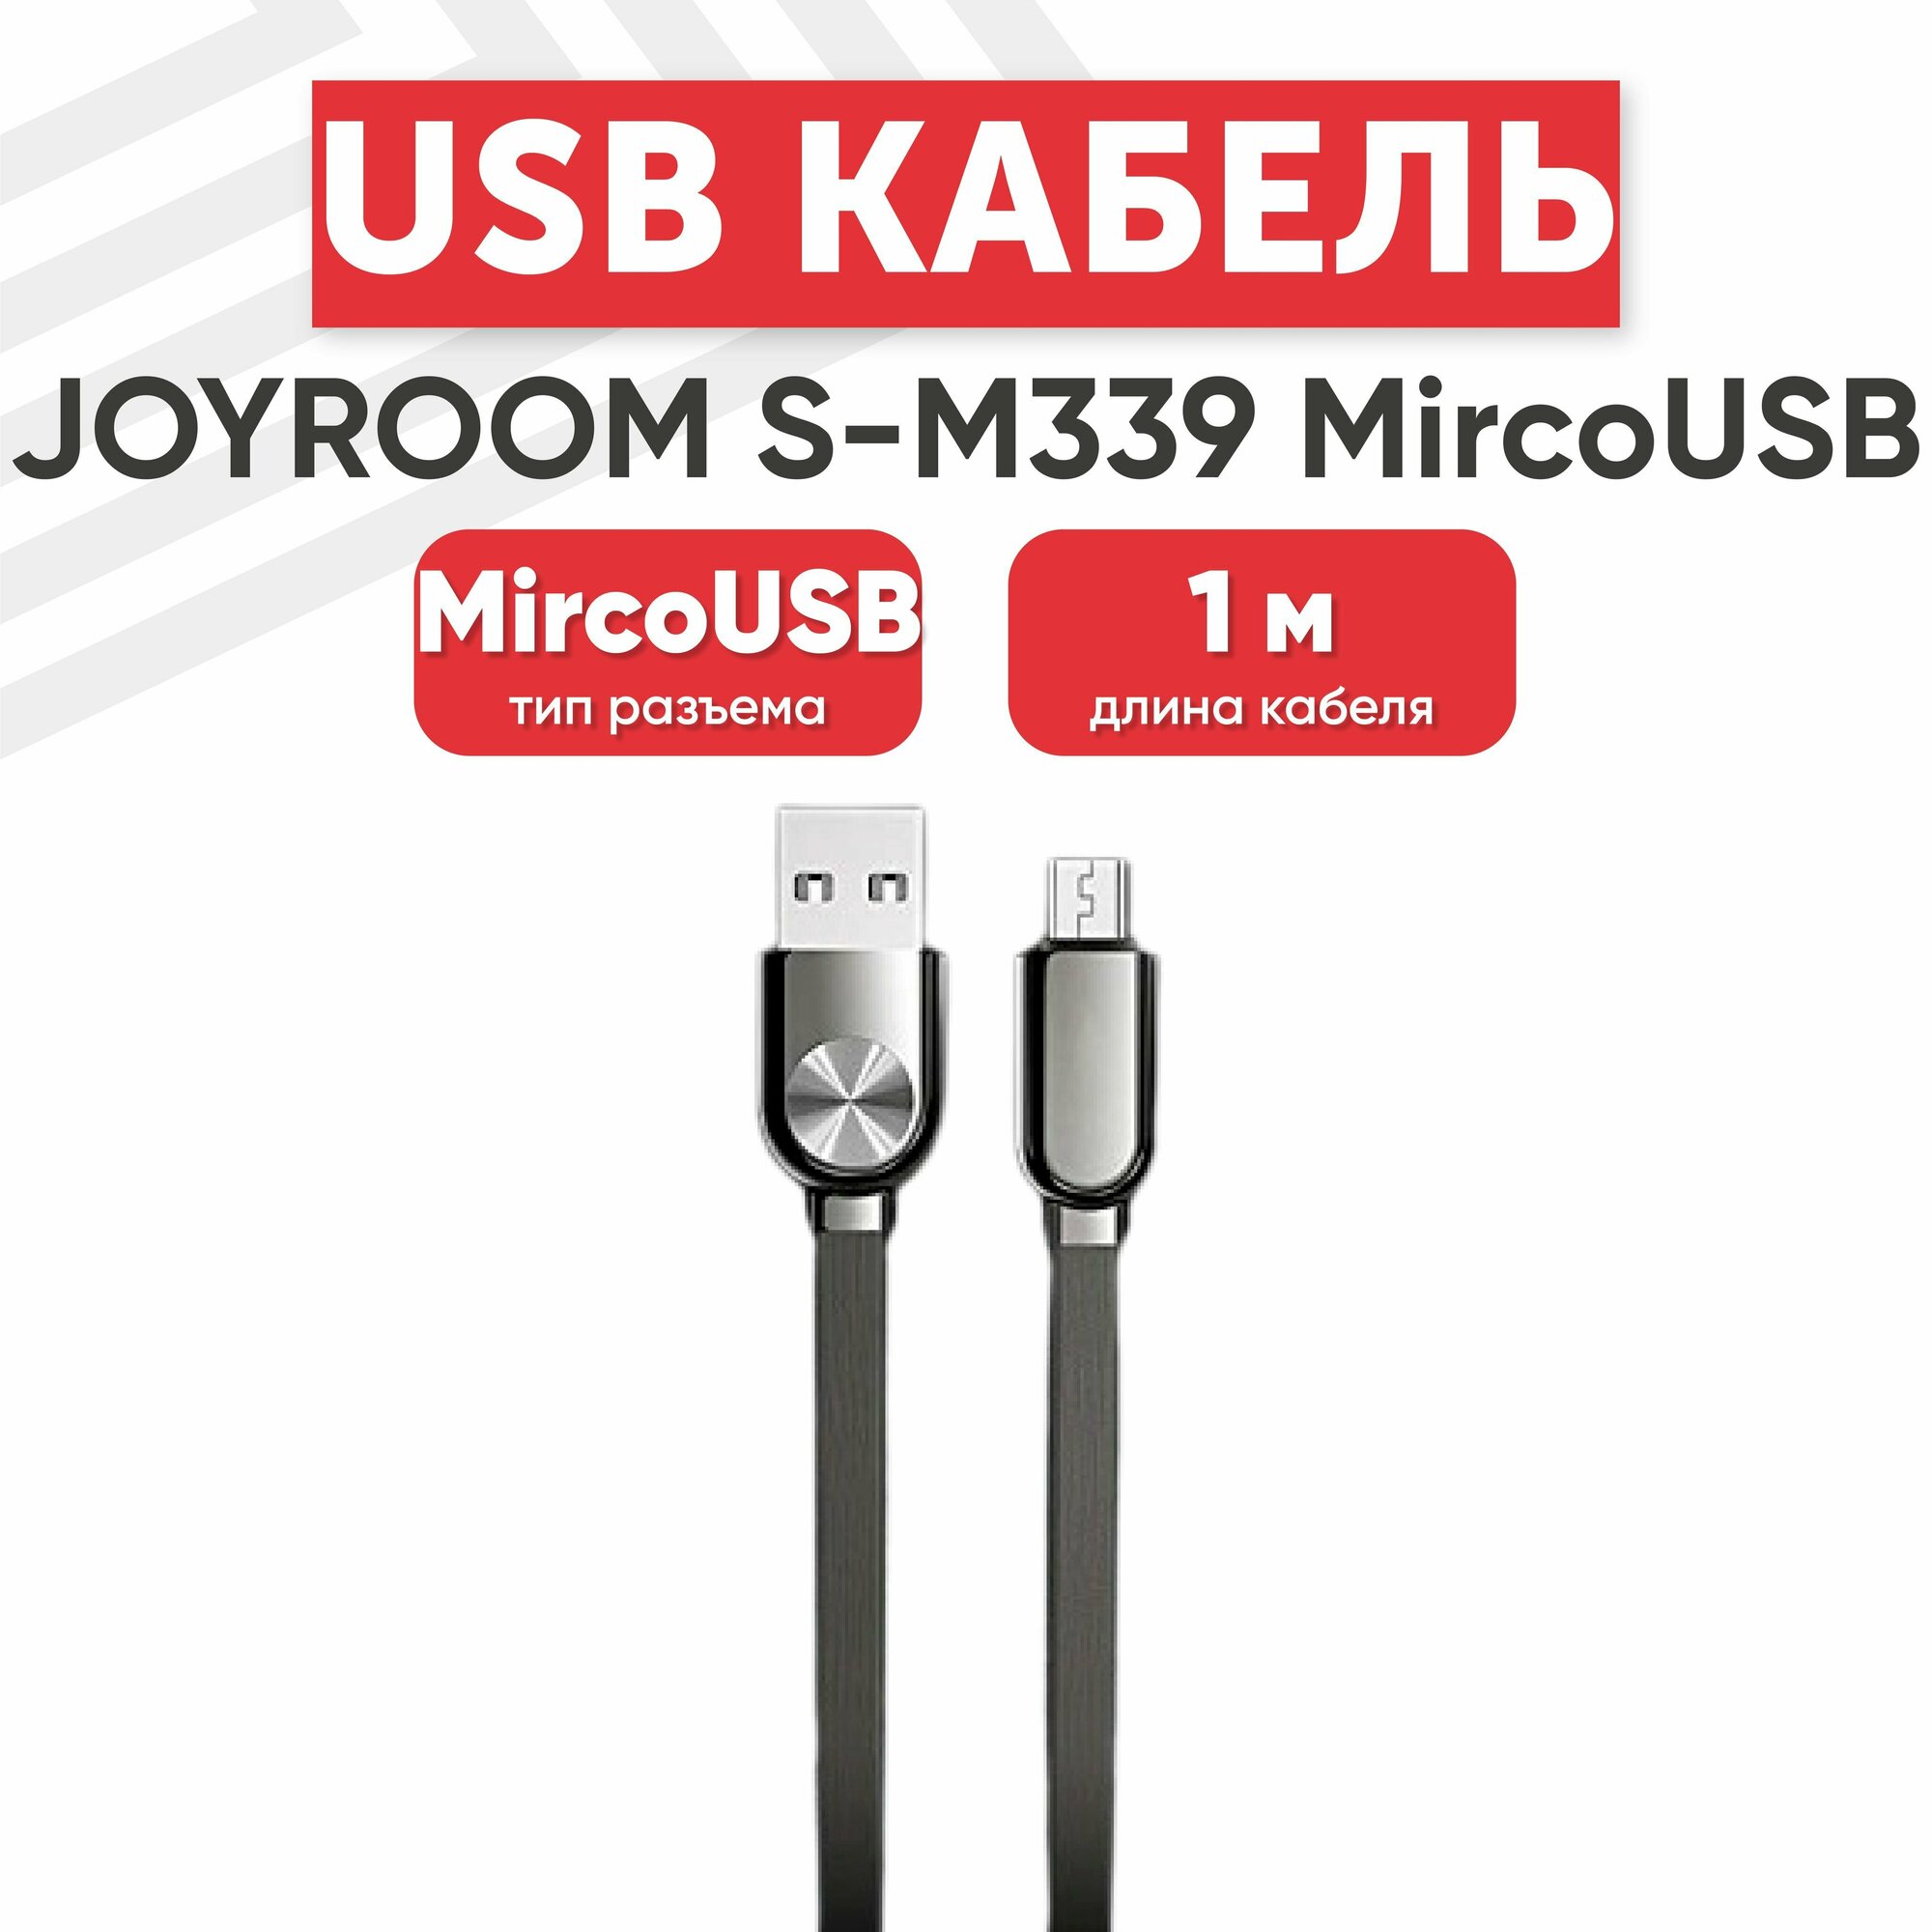 USB кабель Joyroom S-M339 для зарядки, передачи данных, Mirco USB, 2.4А, 1 метр, плоский, металлические разъемы, черный